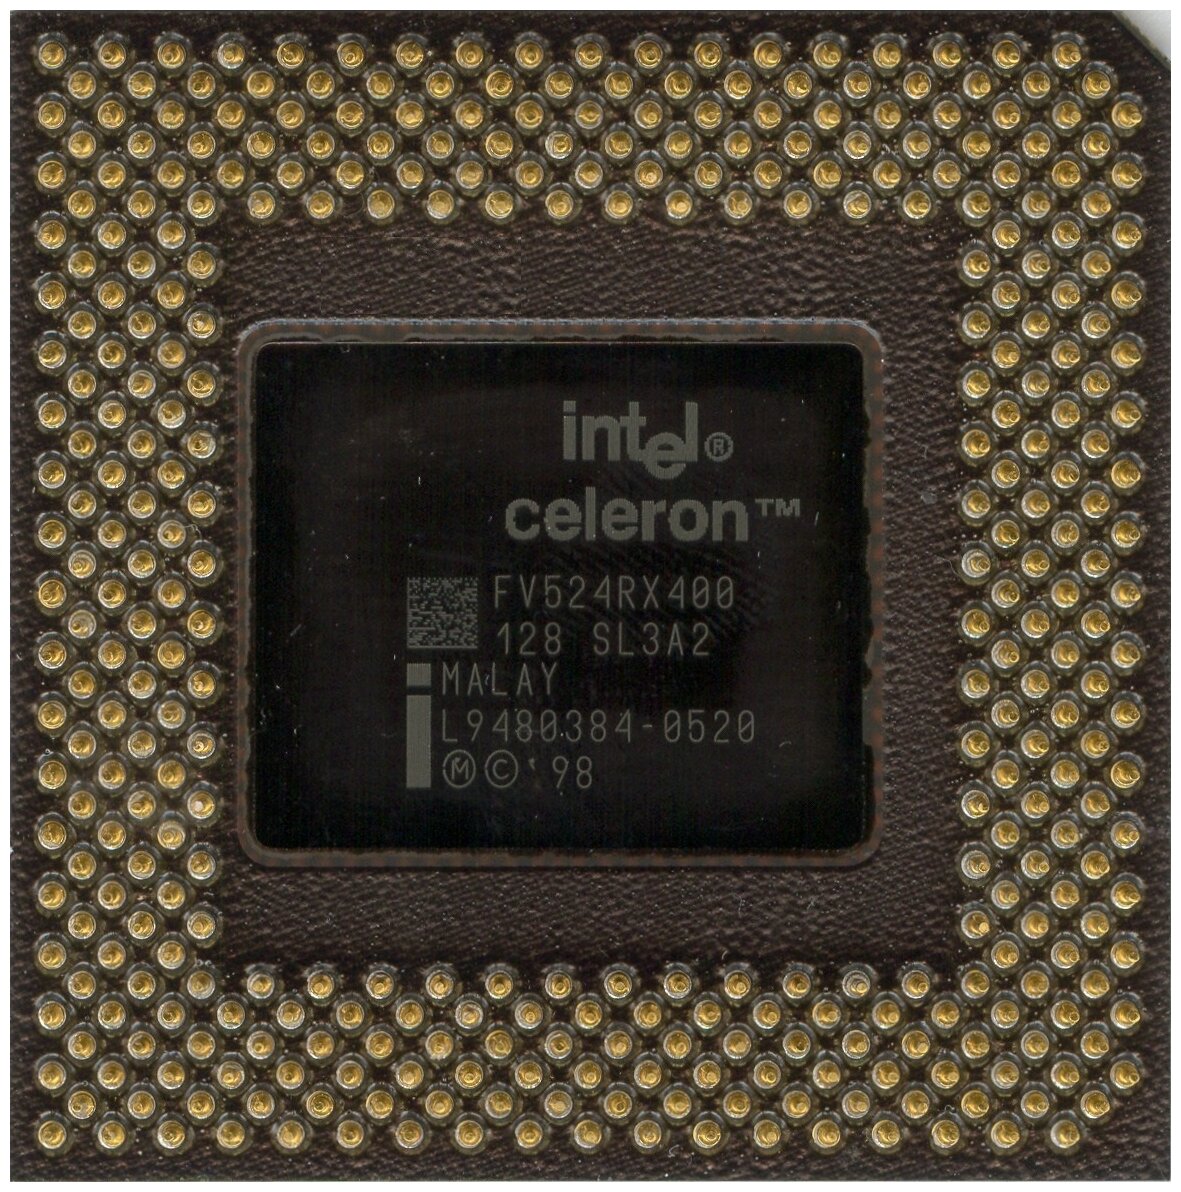 Процессор Intel Celeron FV524RX400 S370,  1 x 400 МГц, OEM